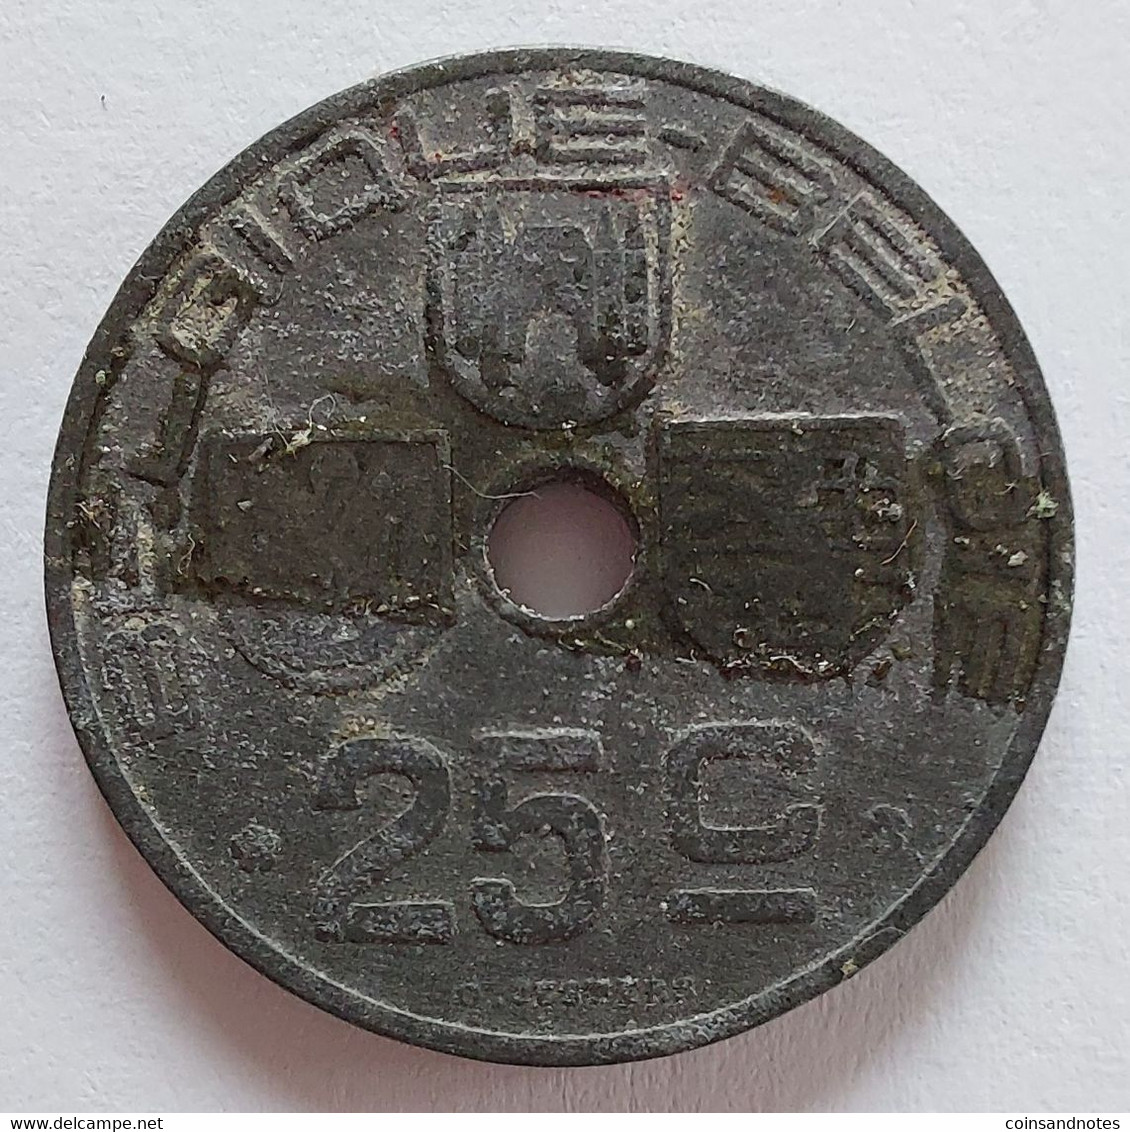 Belgium 1942 - 25 Centiem Zink/Jespers FR/VL - Leopold III - Morin 483 - Pr - 25 Cent